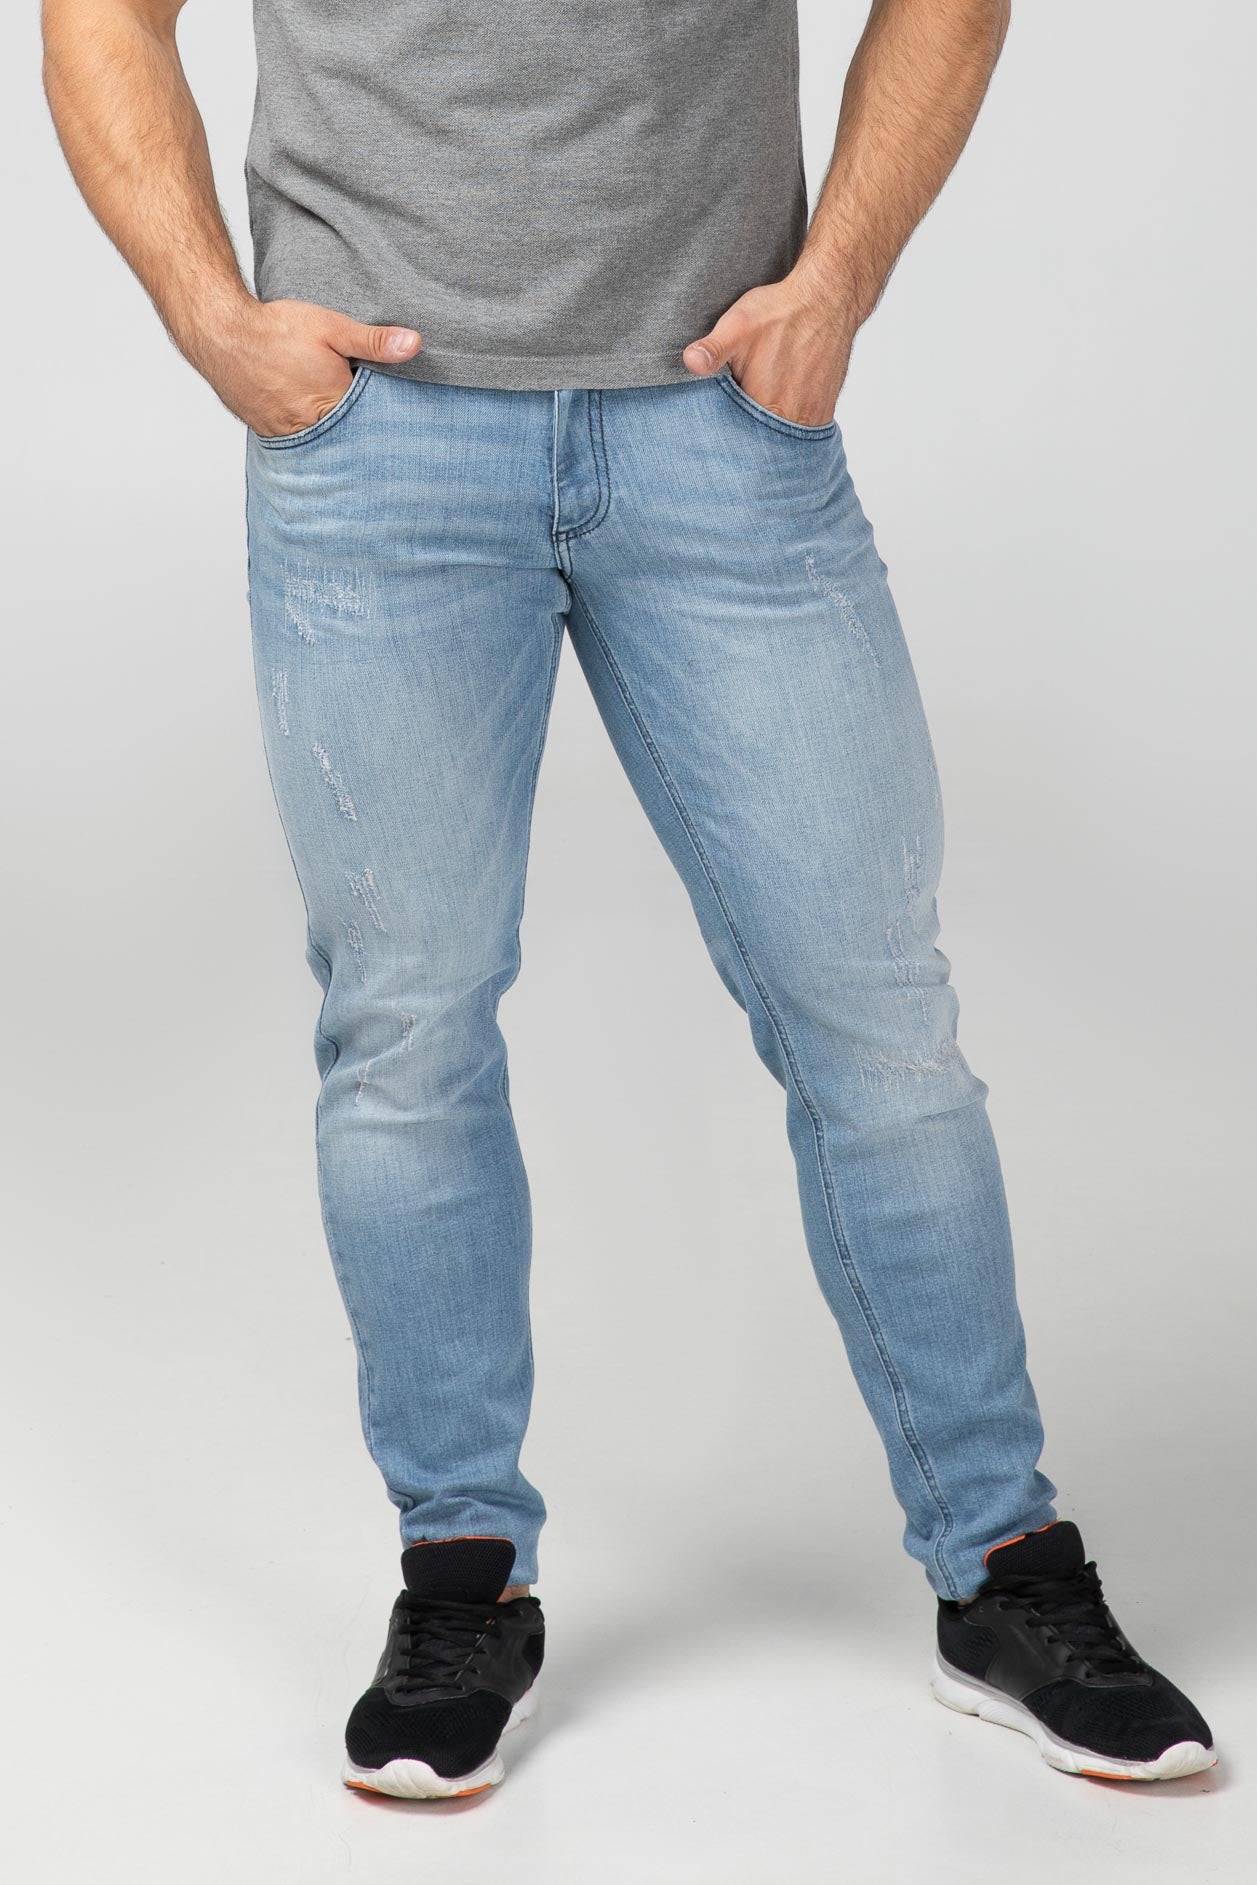 Fitness Jeans Herren in slim fit und BRIGHT DESTROYED wash von Aesparel